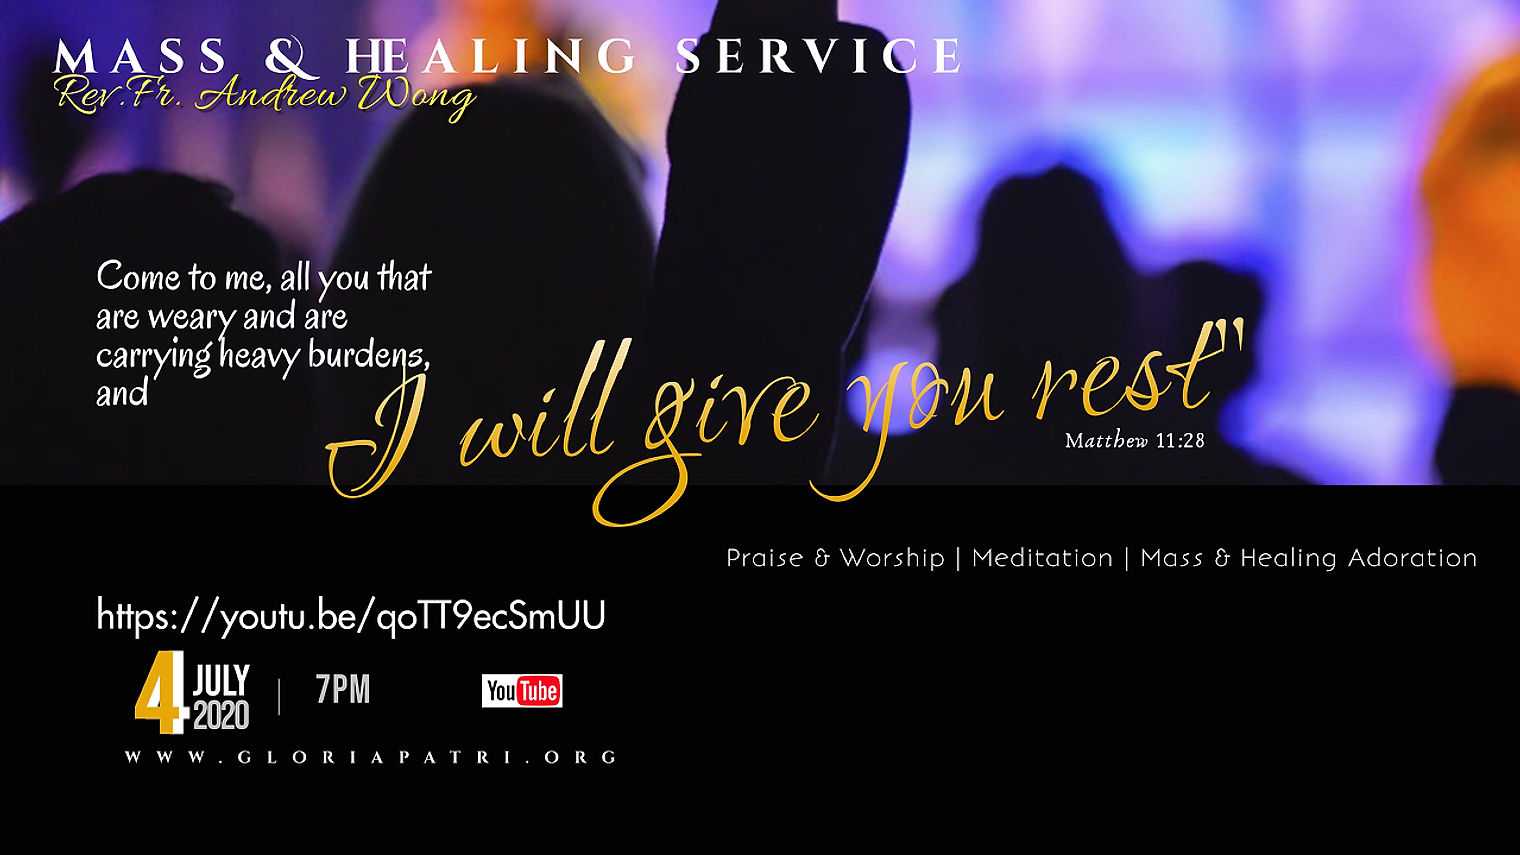 Mass & Healing Adoration Service